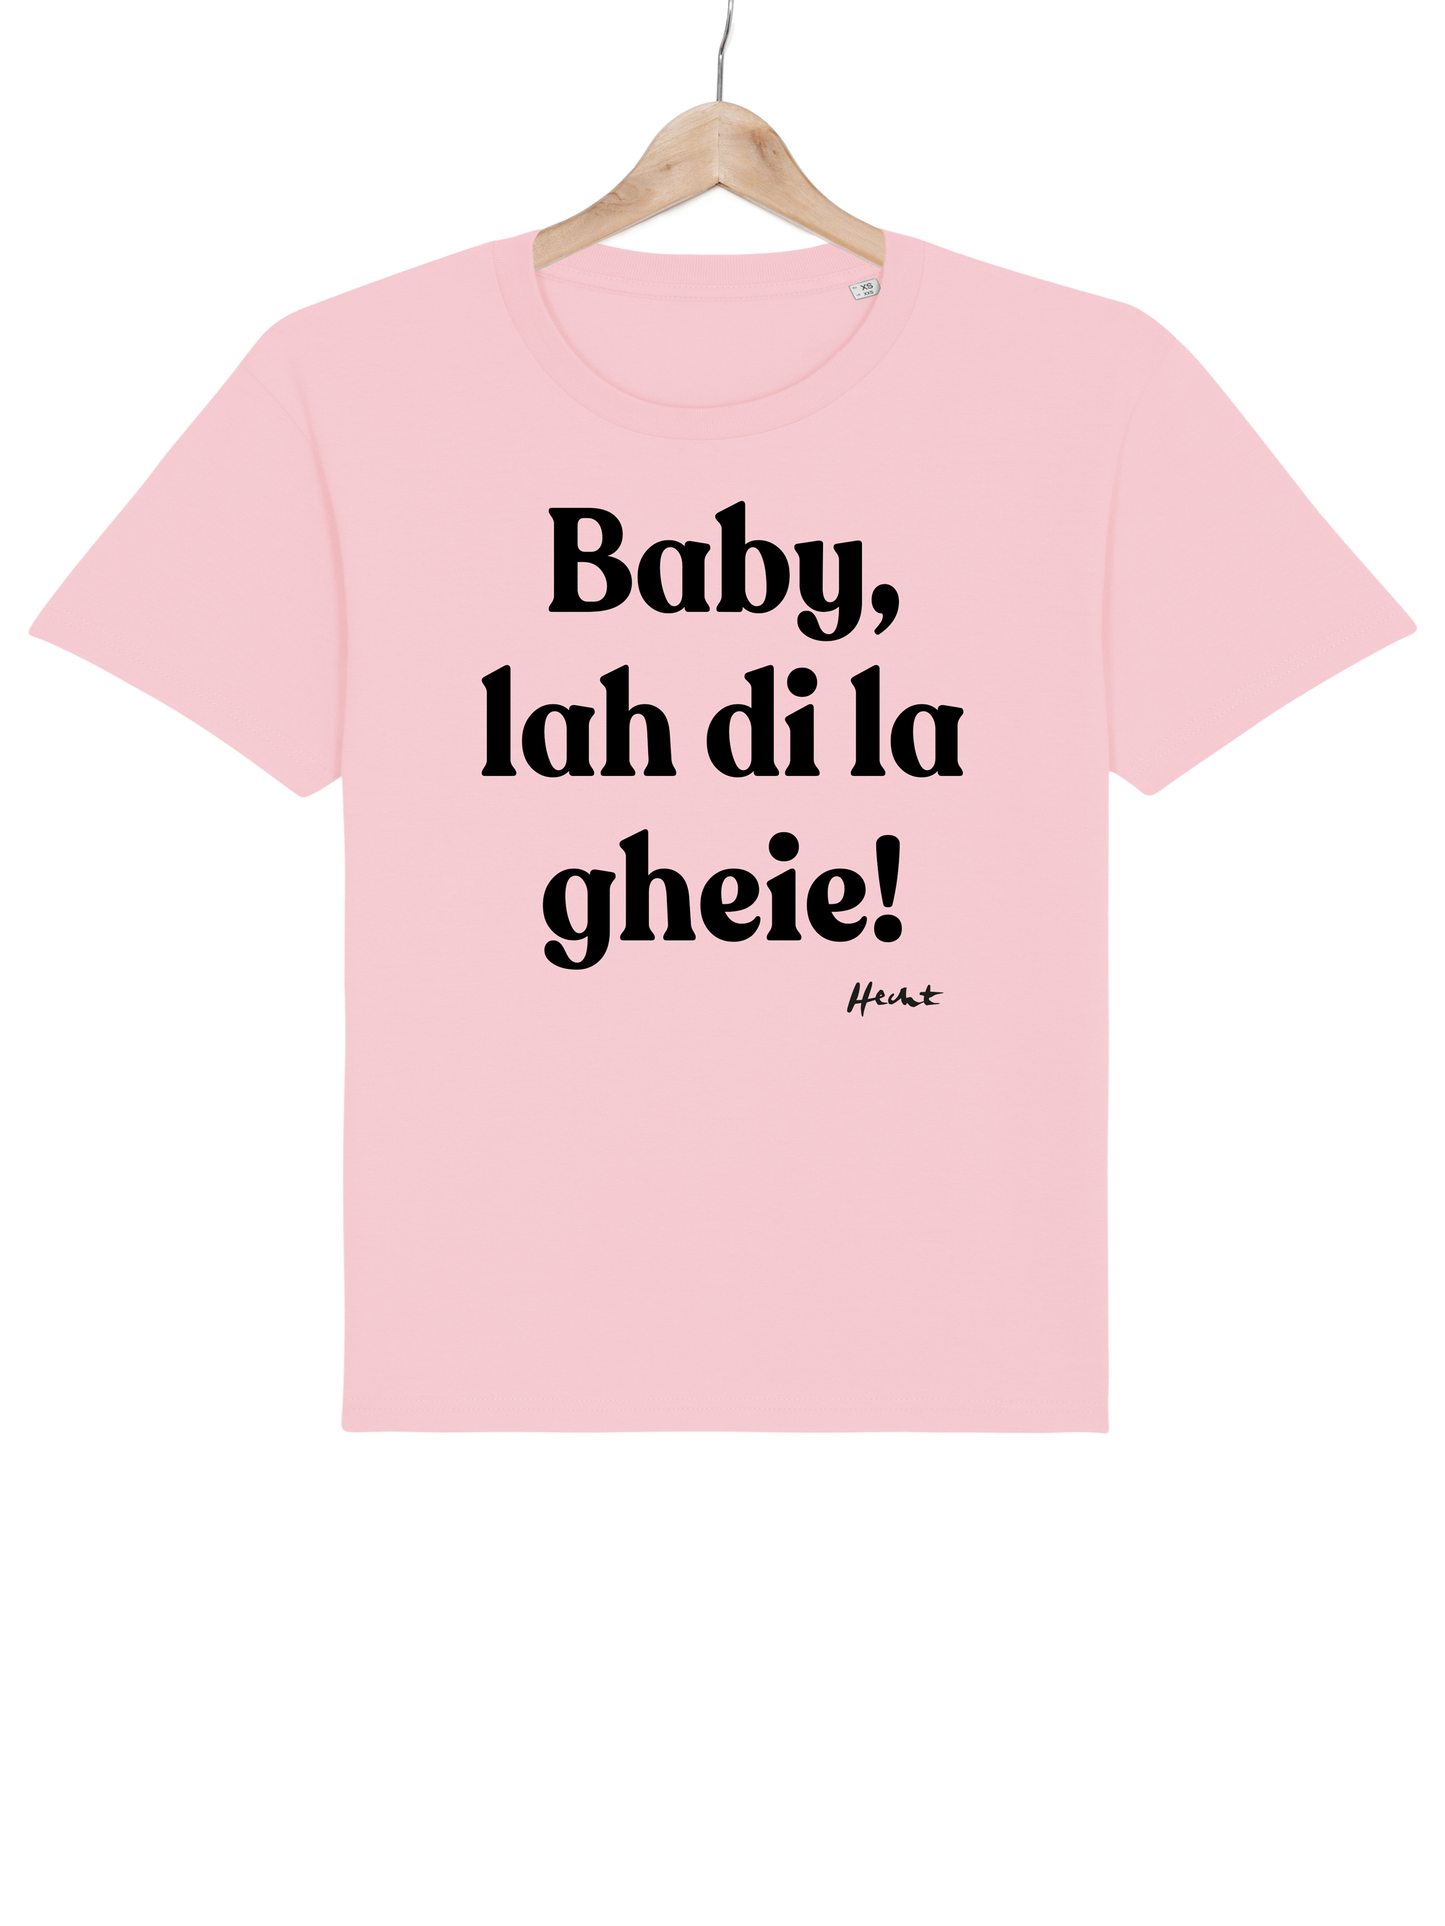 Gheie - T-Shirt (pink)